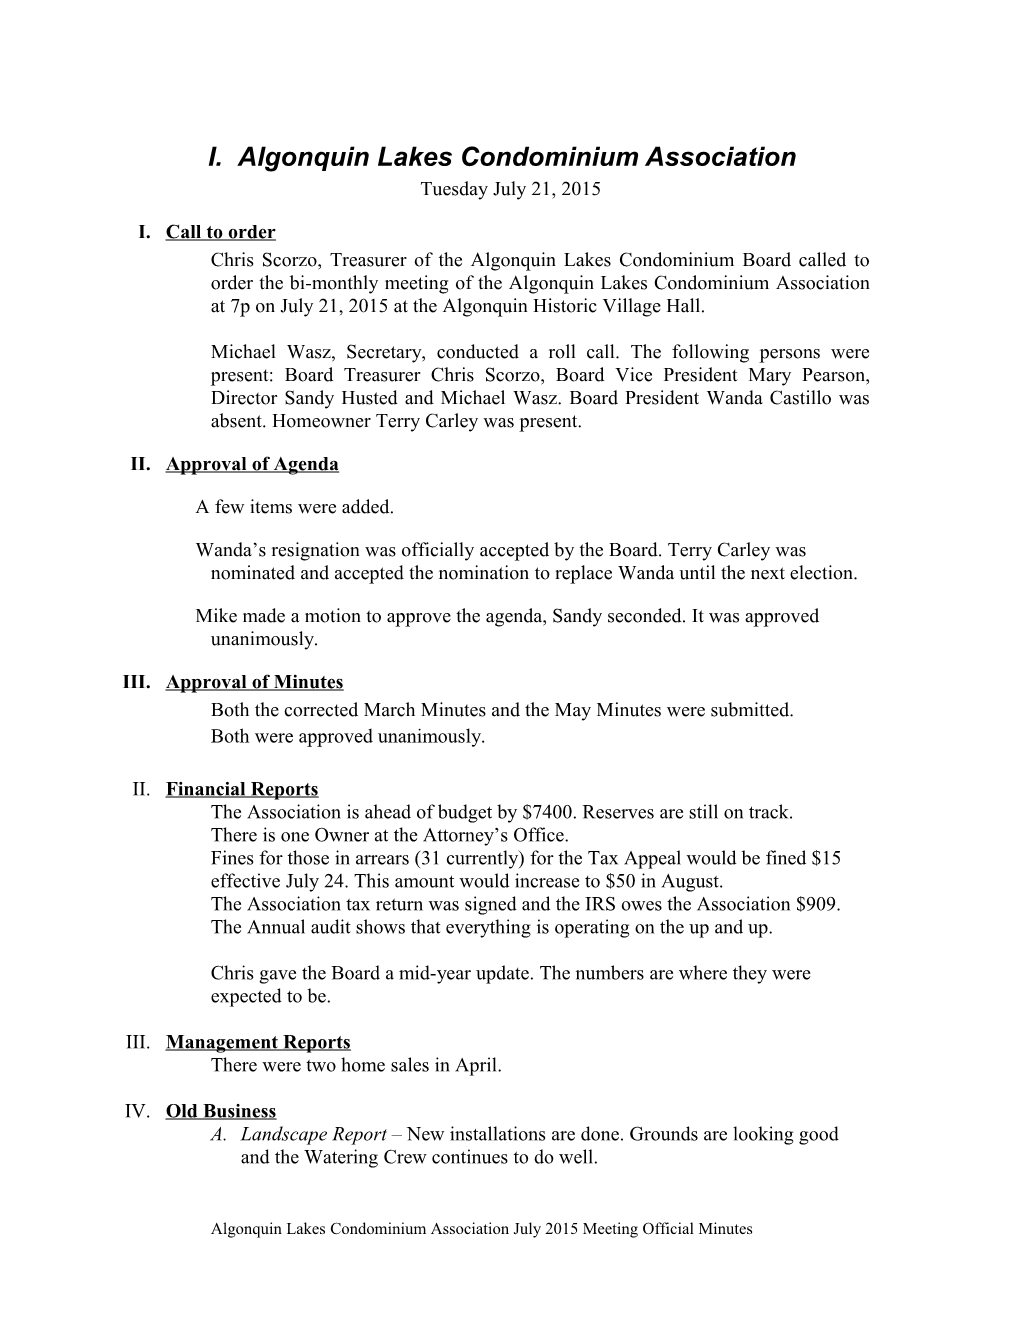 Algonquin Lakes Condominium Association